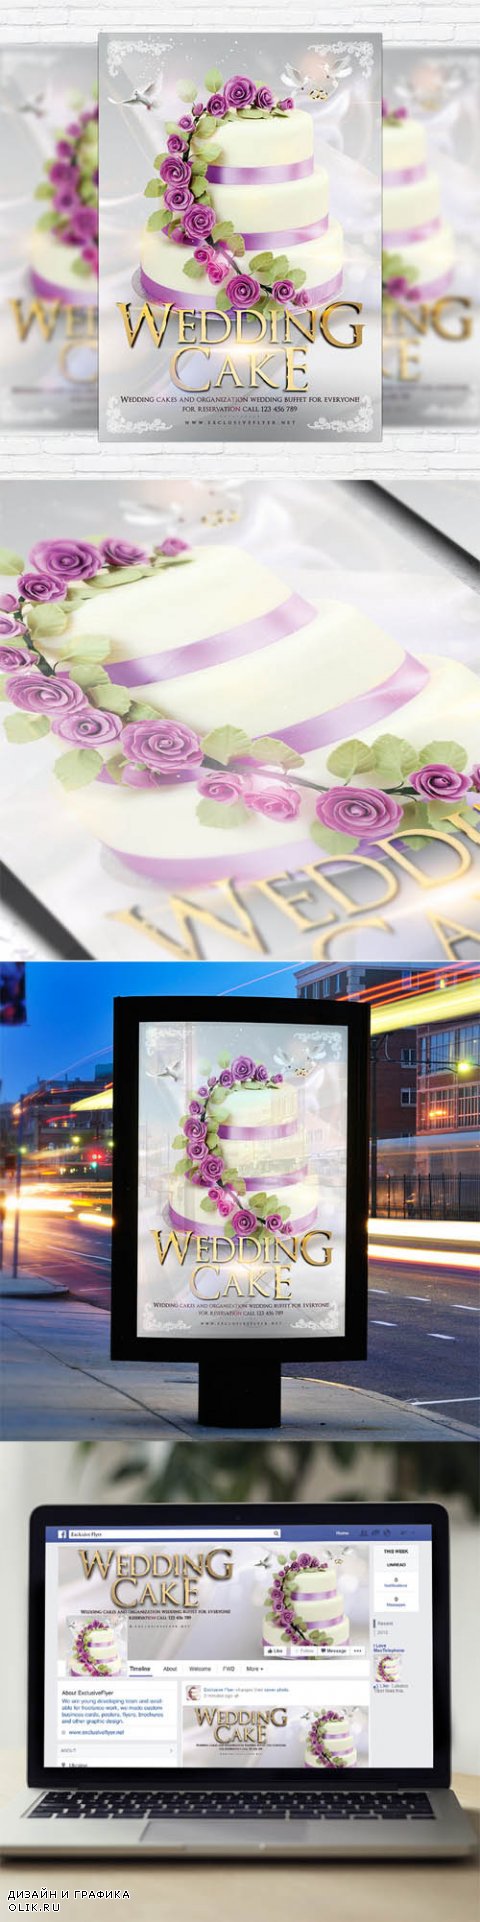 Flyer Template - Wedding Cake + Facebook Cover